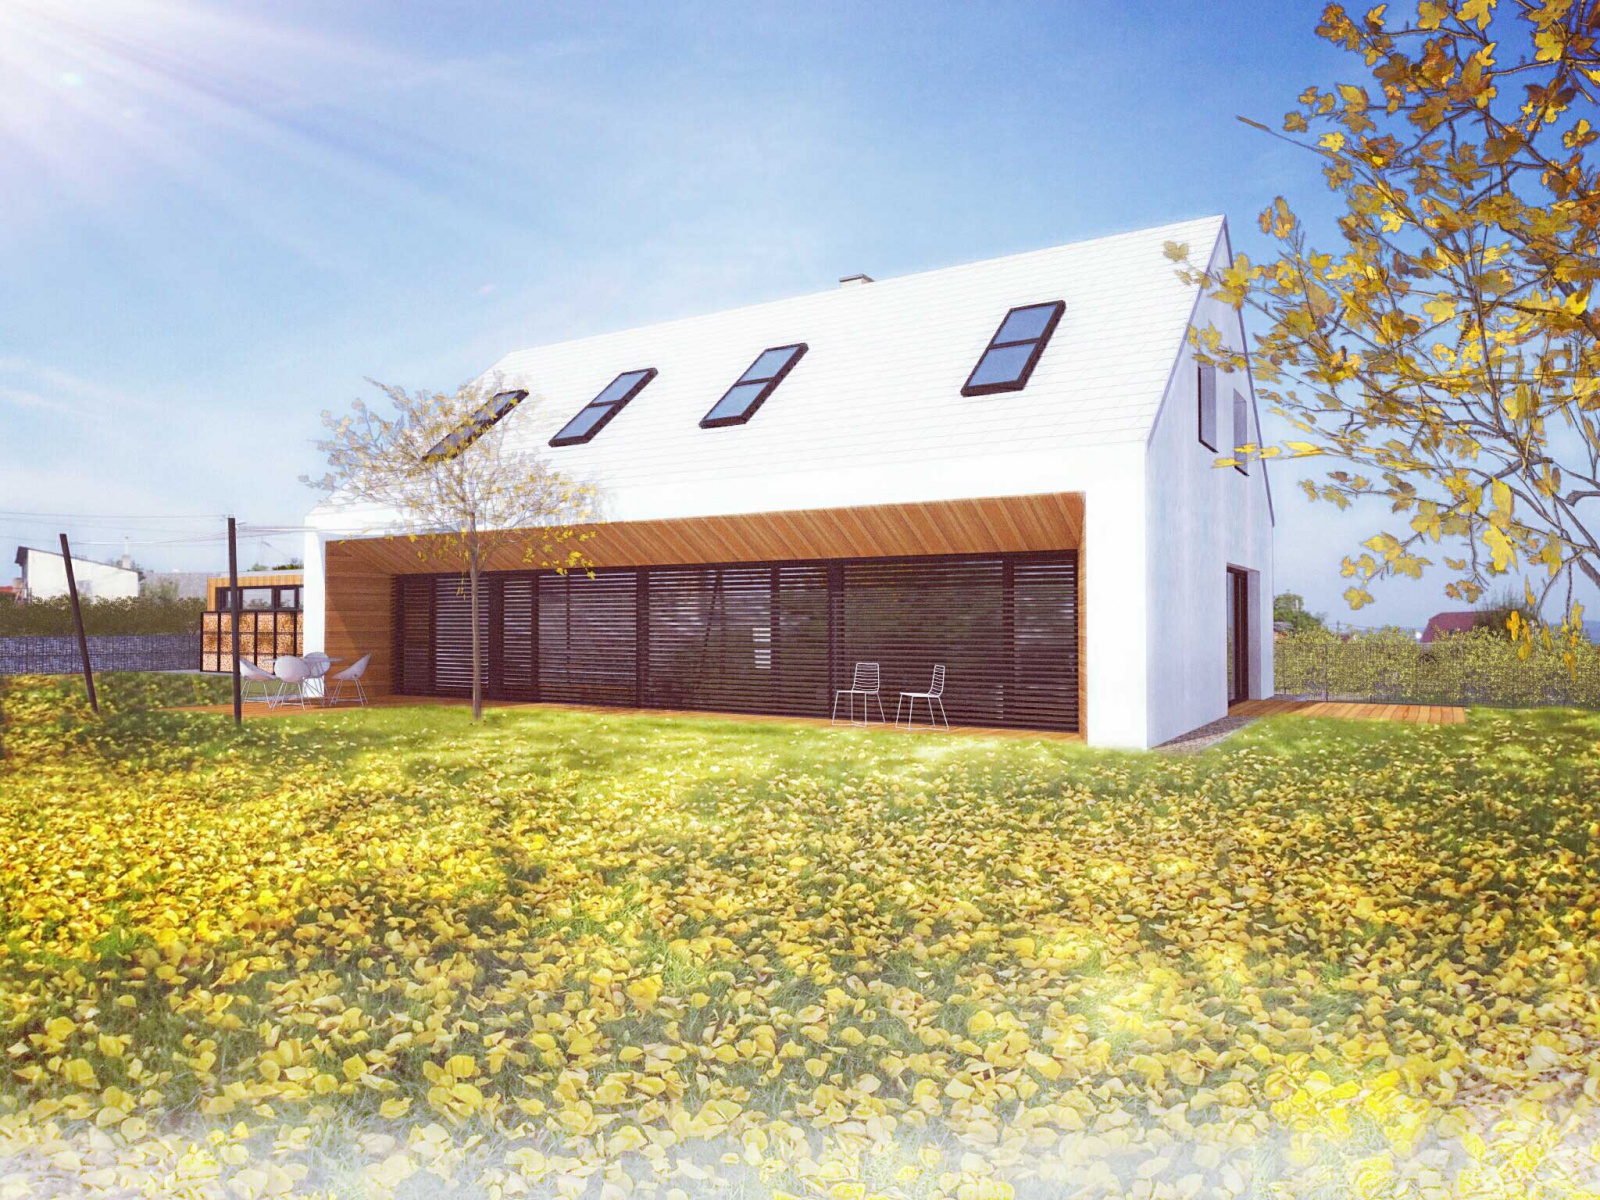 Moderní dům na venkově - 3K Architects s.r.o.